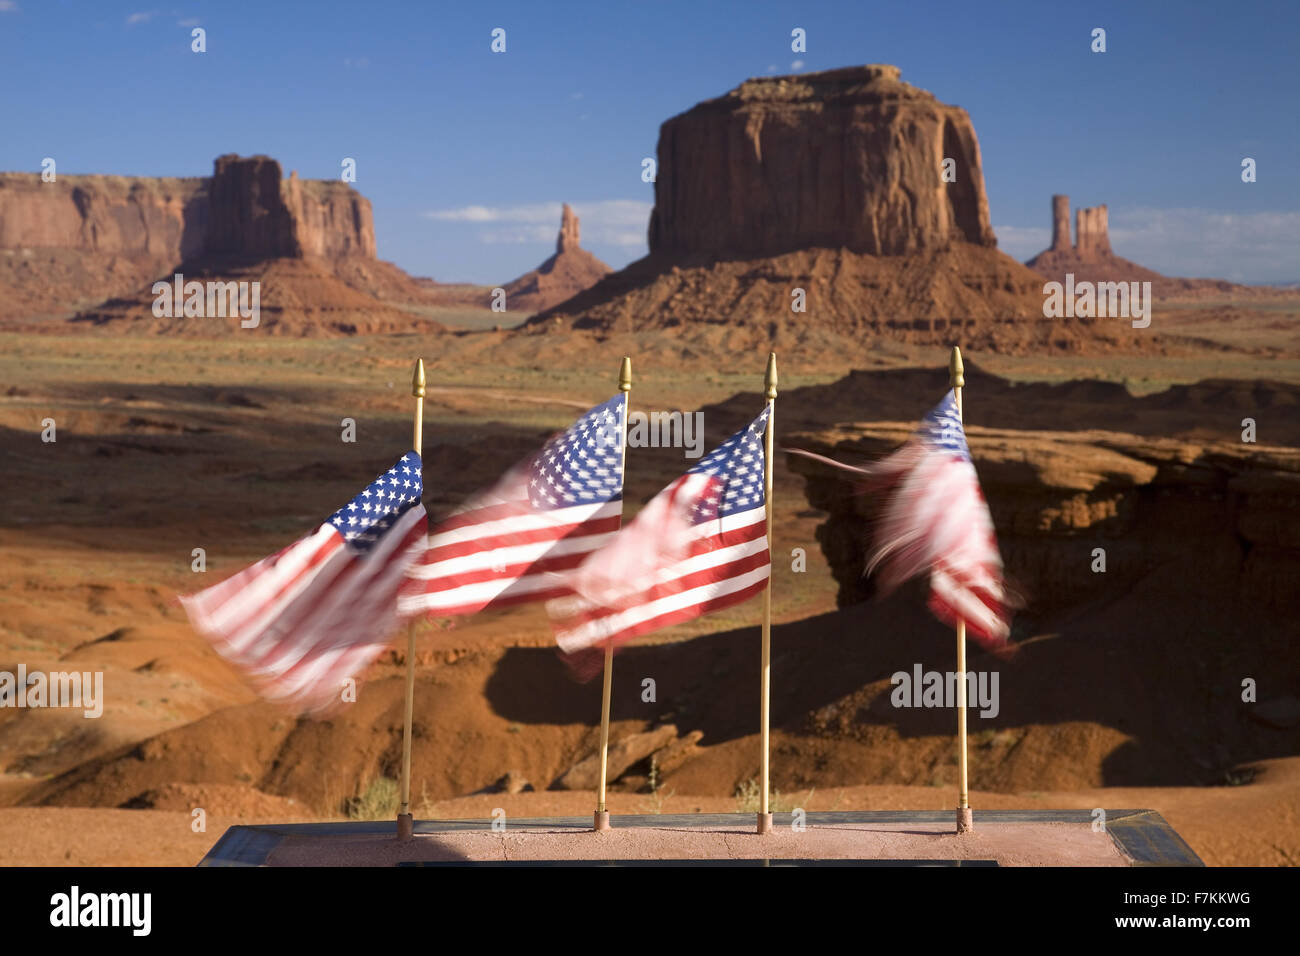 US-Flaggen wehen im Wind vor roten Buttes und bunten Türme des Monument Valley Navajo Tribal Park, Southern Utah in der Nähe der Grenze zu Arizona Stockfoto